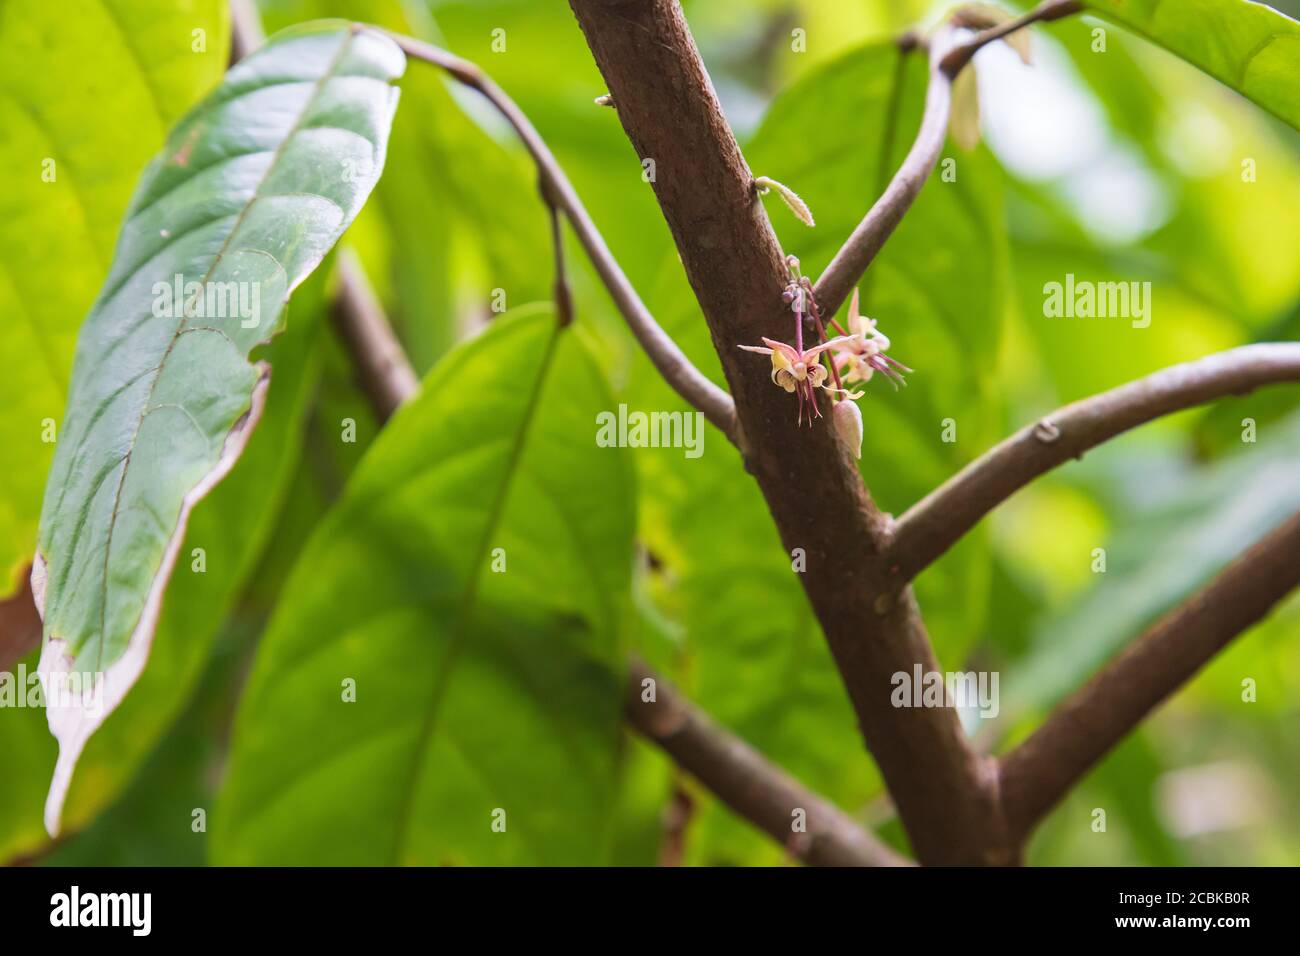 Eine Blütenknospe auf einem Kakaobaum, ein selten gesehenes Bild Stockfoto